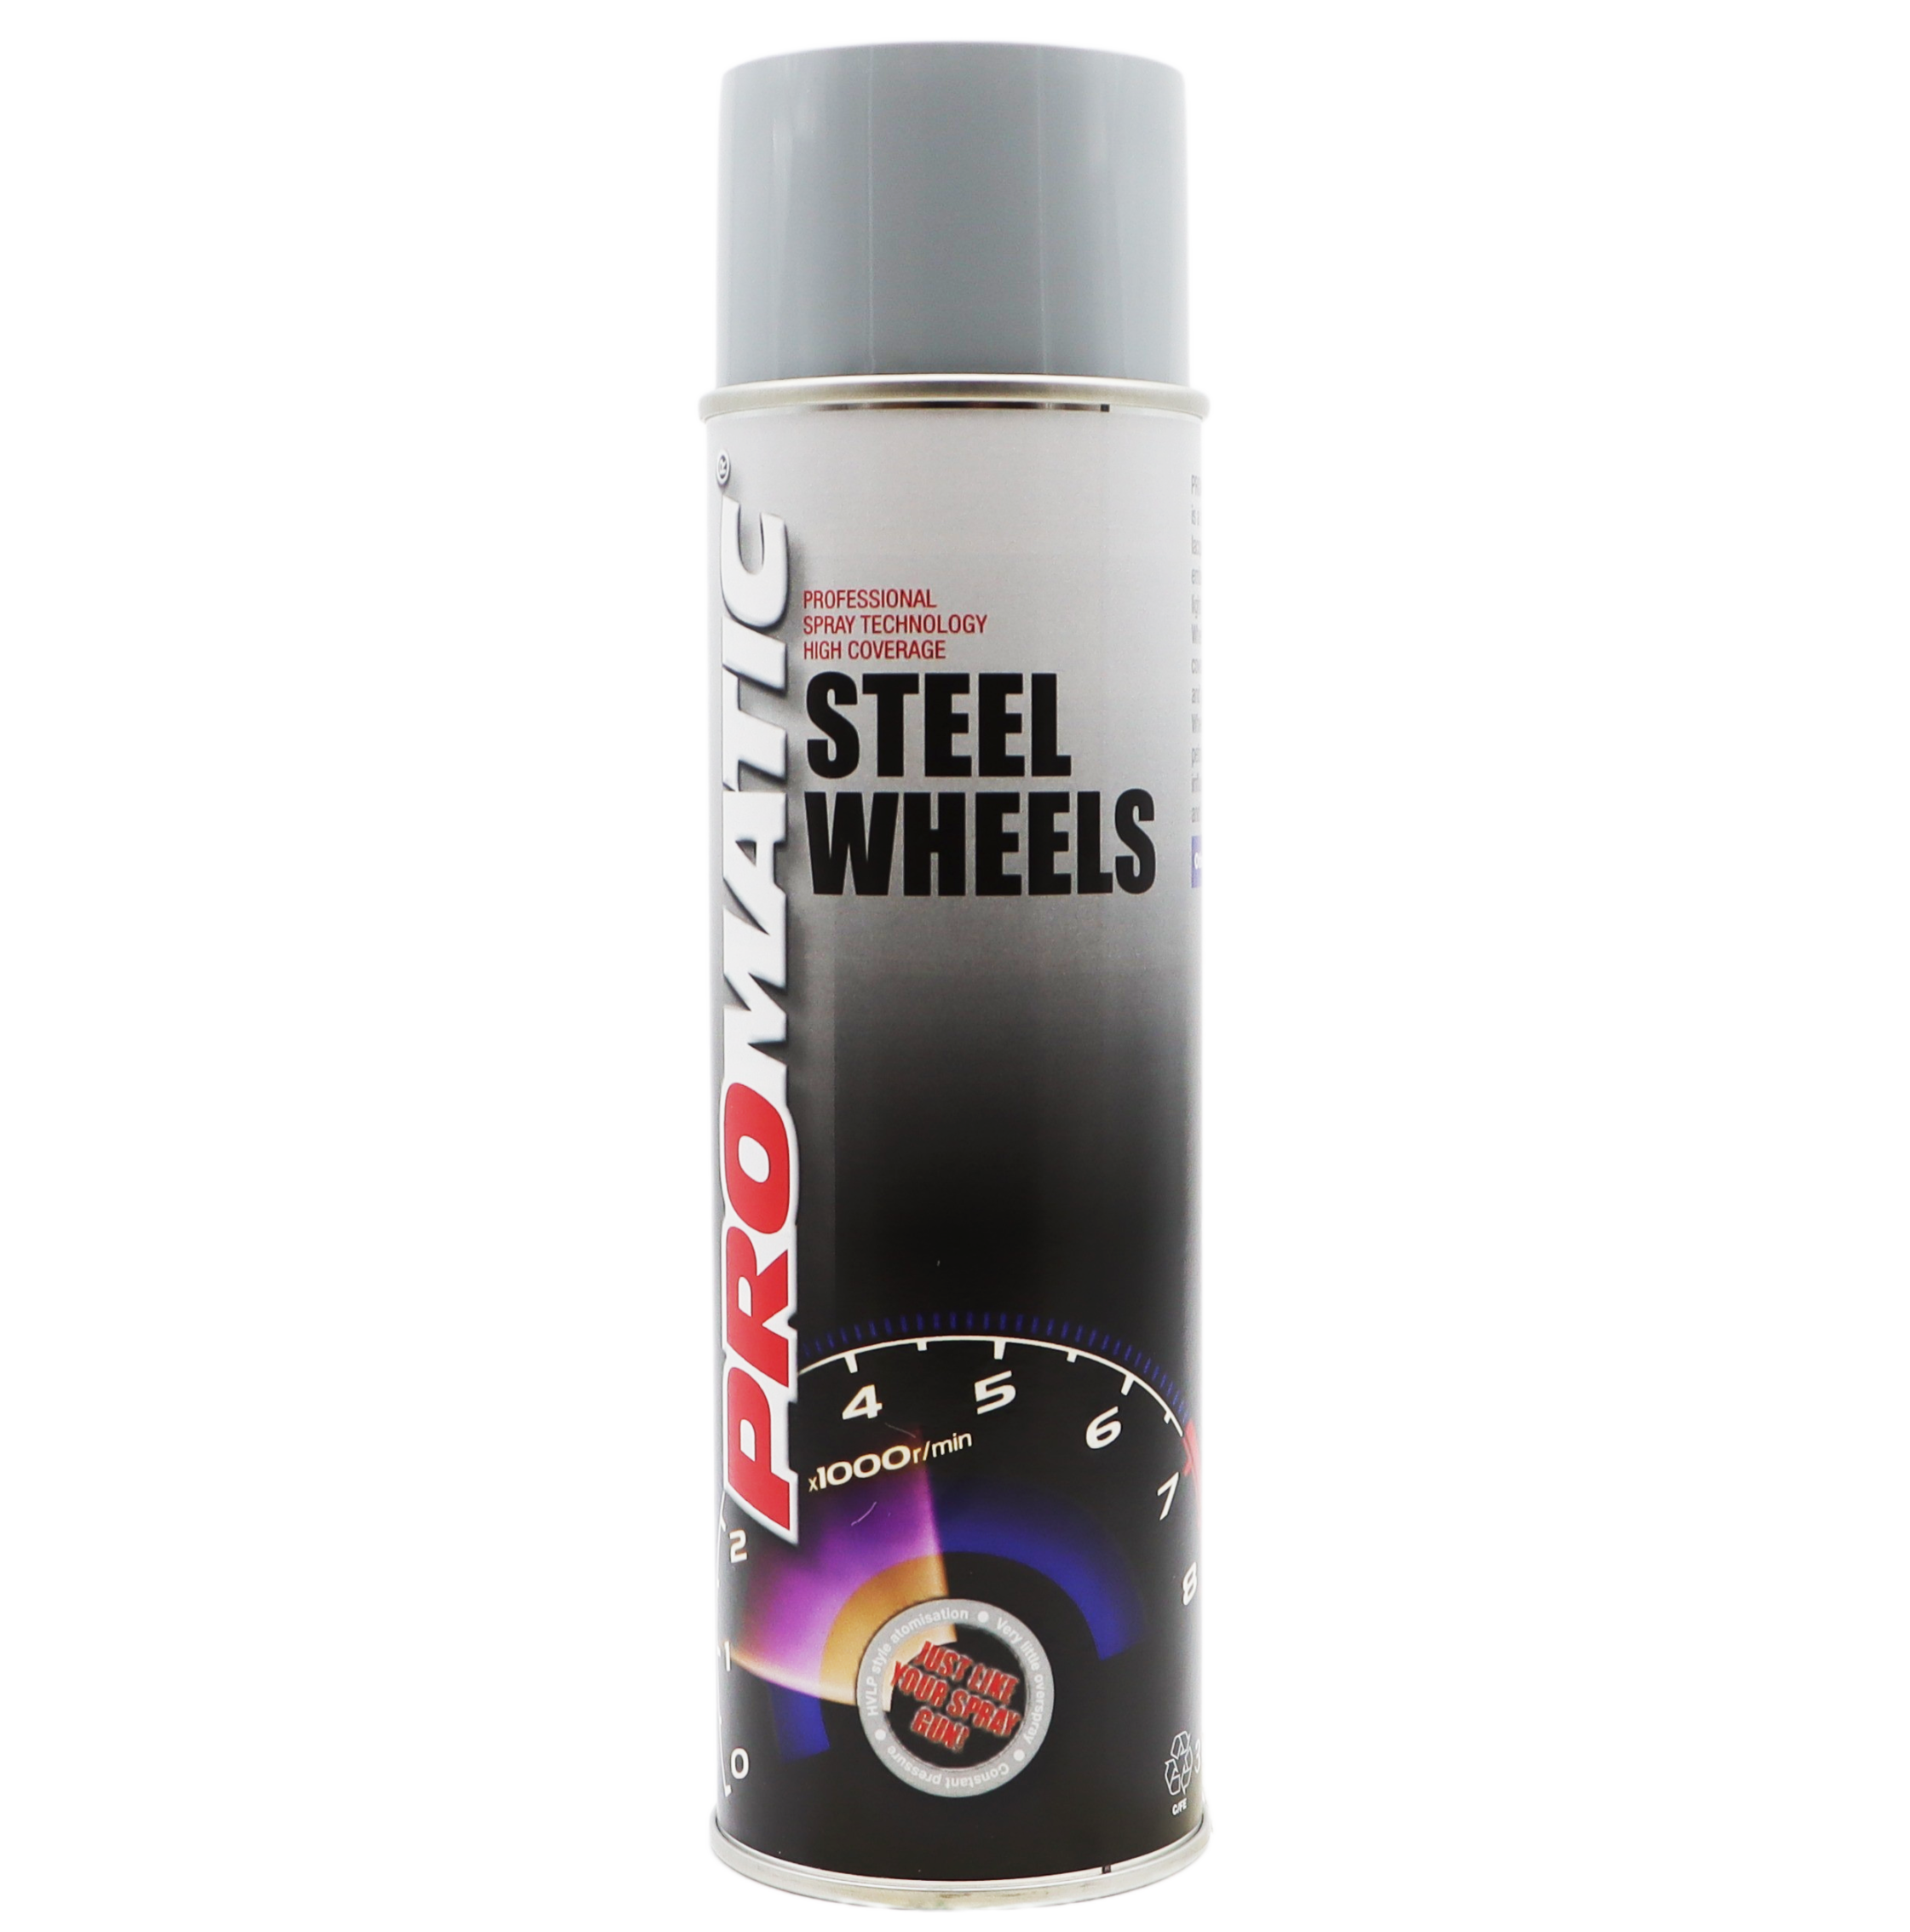 Steel Wheels Aerosol (500ml) Product Image